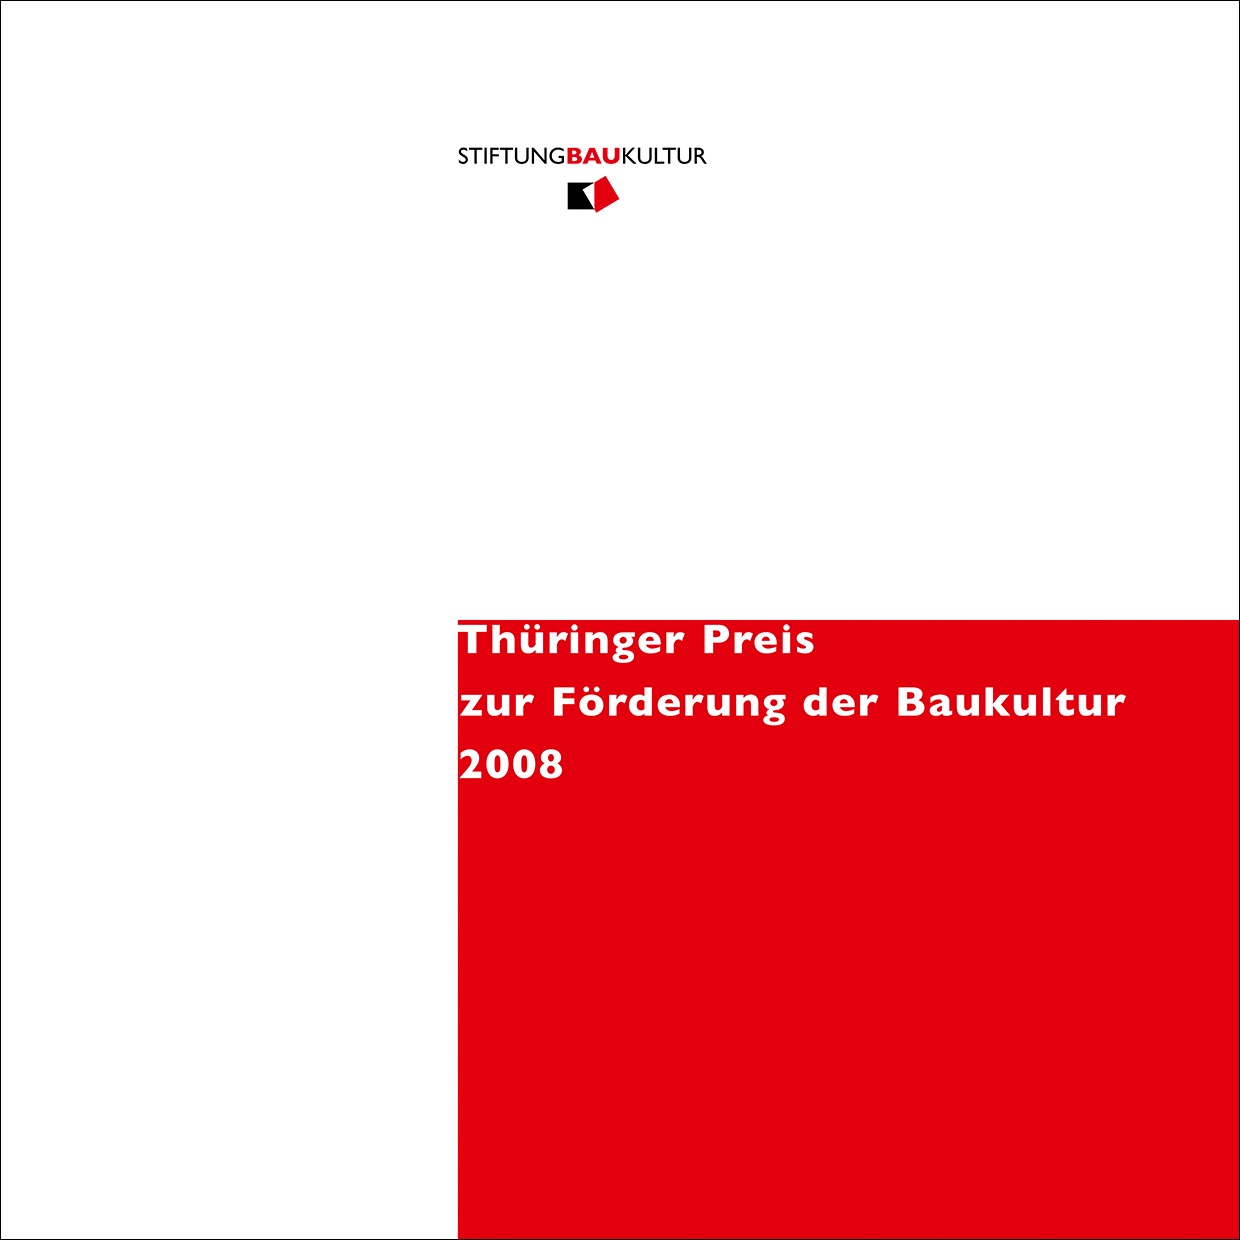 Publikation | Preis zur Förderung der Baukultur 2008, Bild: Stiftung Baukultur Thüringen